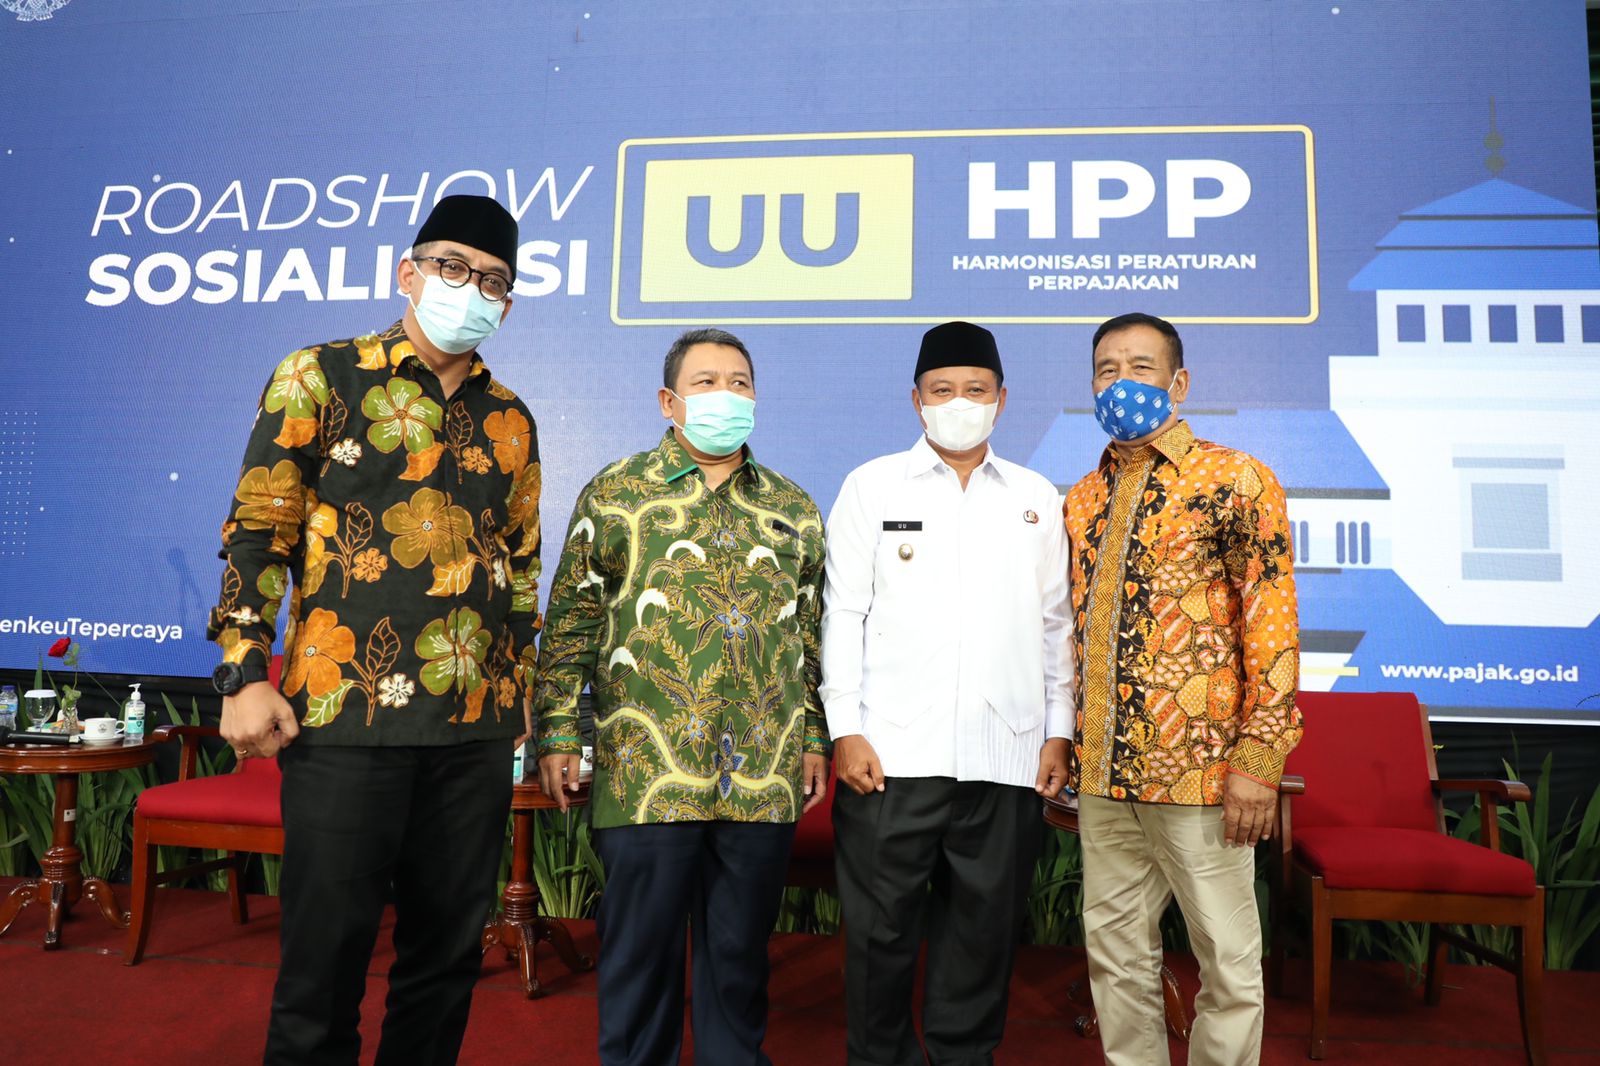 Sosialisasi UU HPP digelar hari ini secara luring di kantor Gubernur Jawa Barat (Gedung Sate) dan disiarkan secara virtual lewat aplikasi Zoom dan Youtube Ditjen Pajak RI, Jumat (17/12).